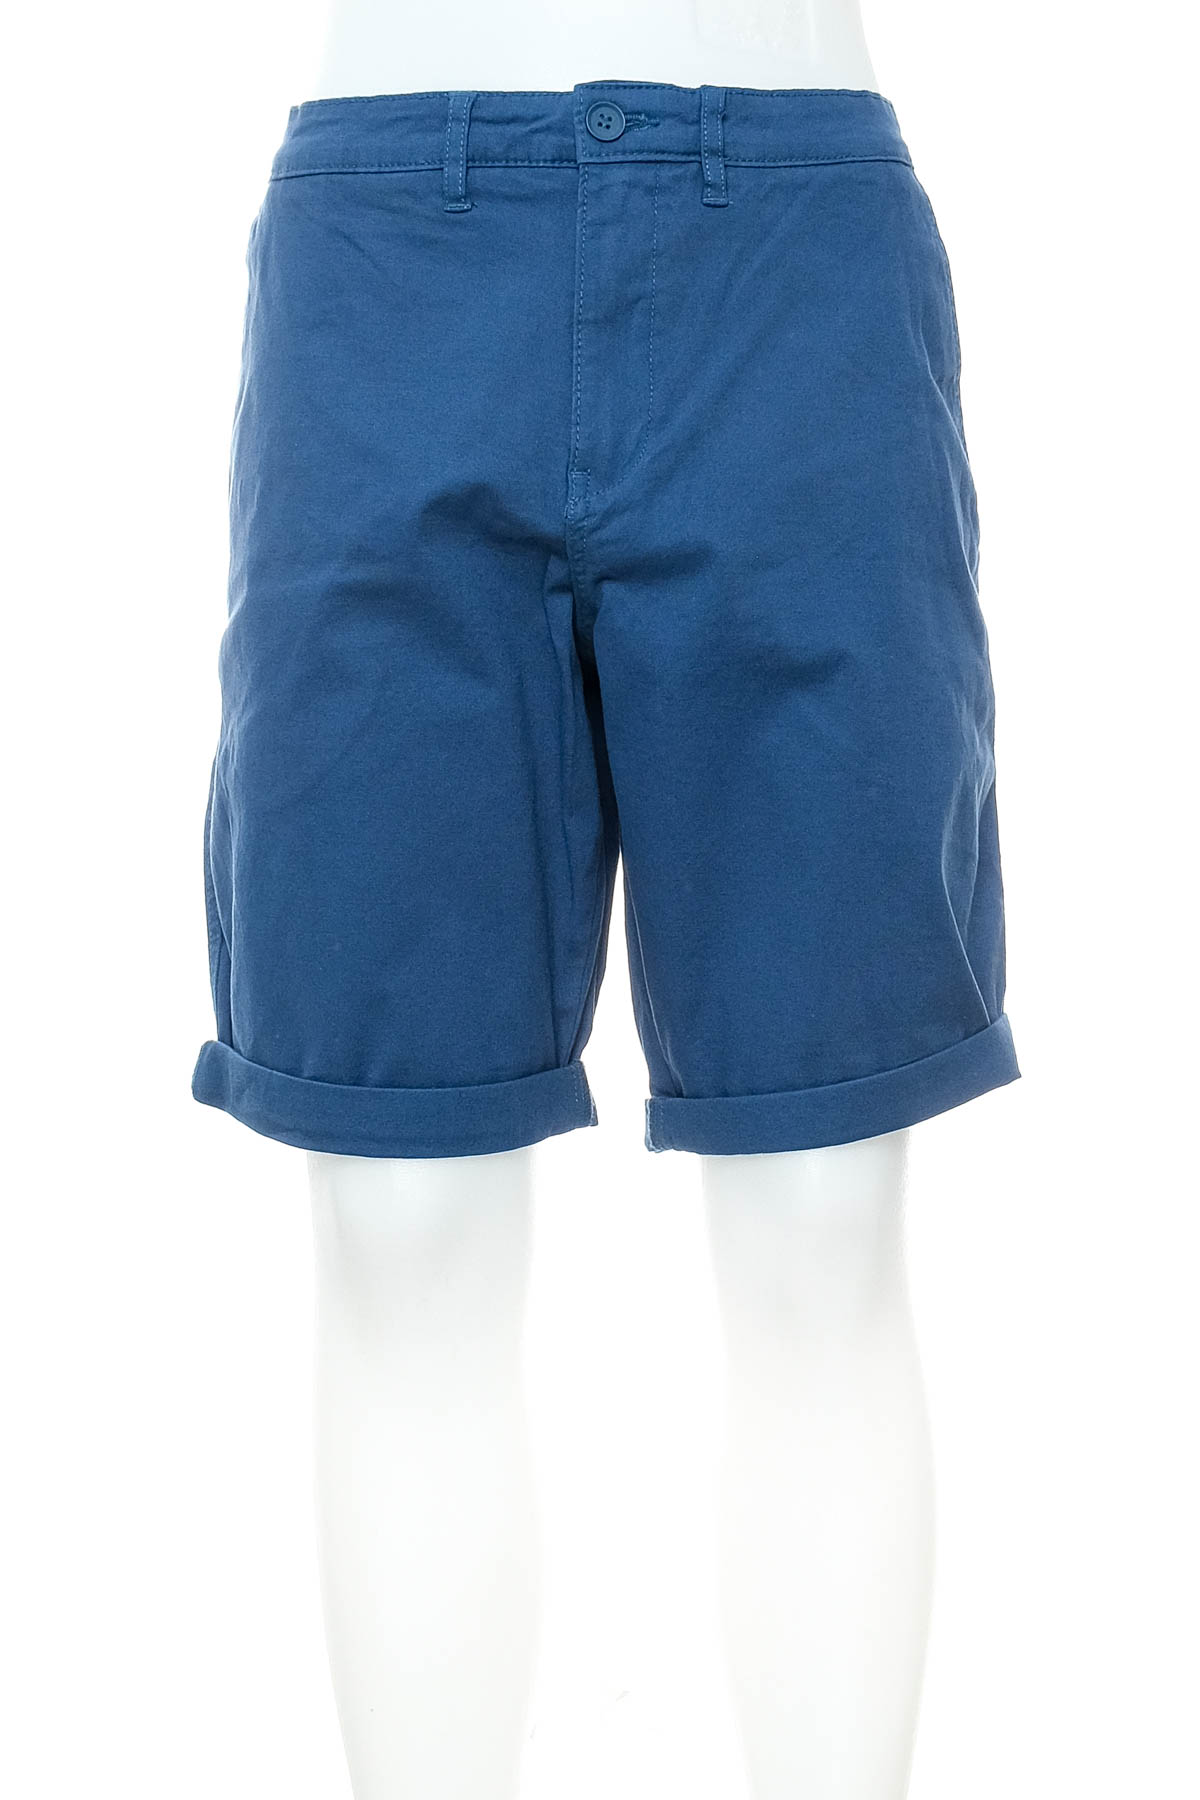 Men's shorts - Celio* - 0